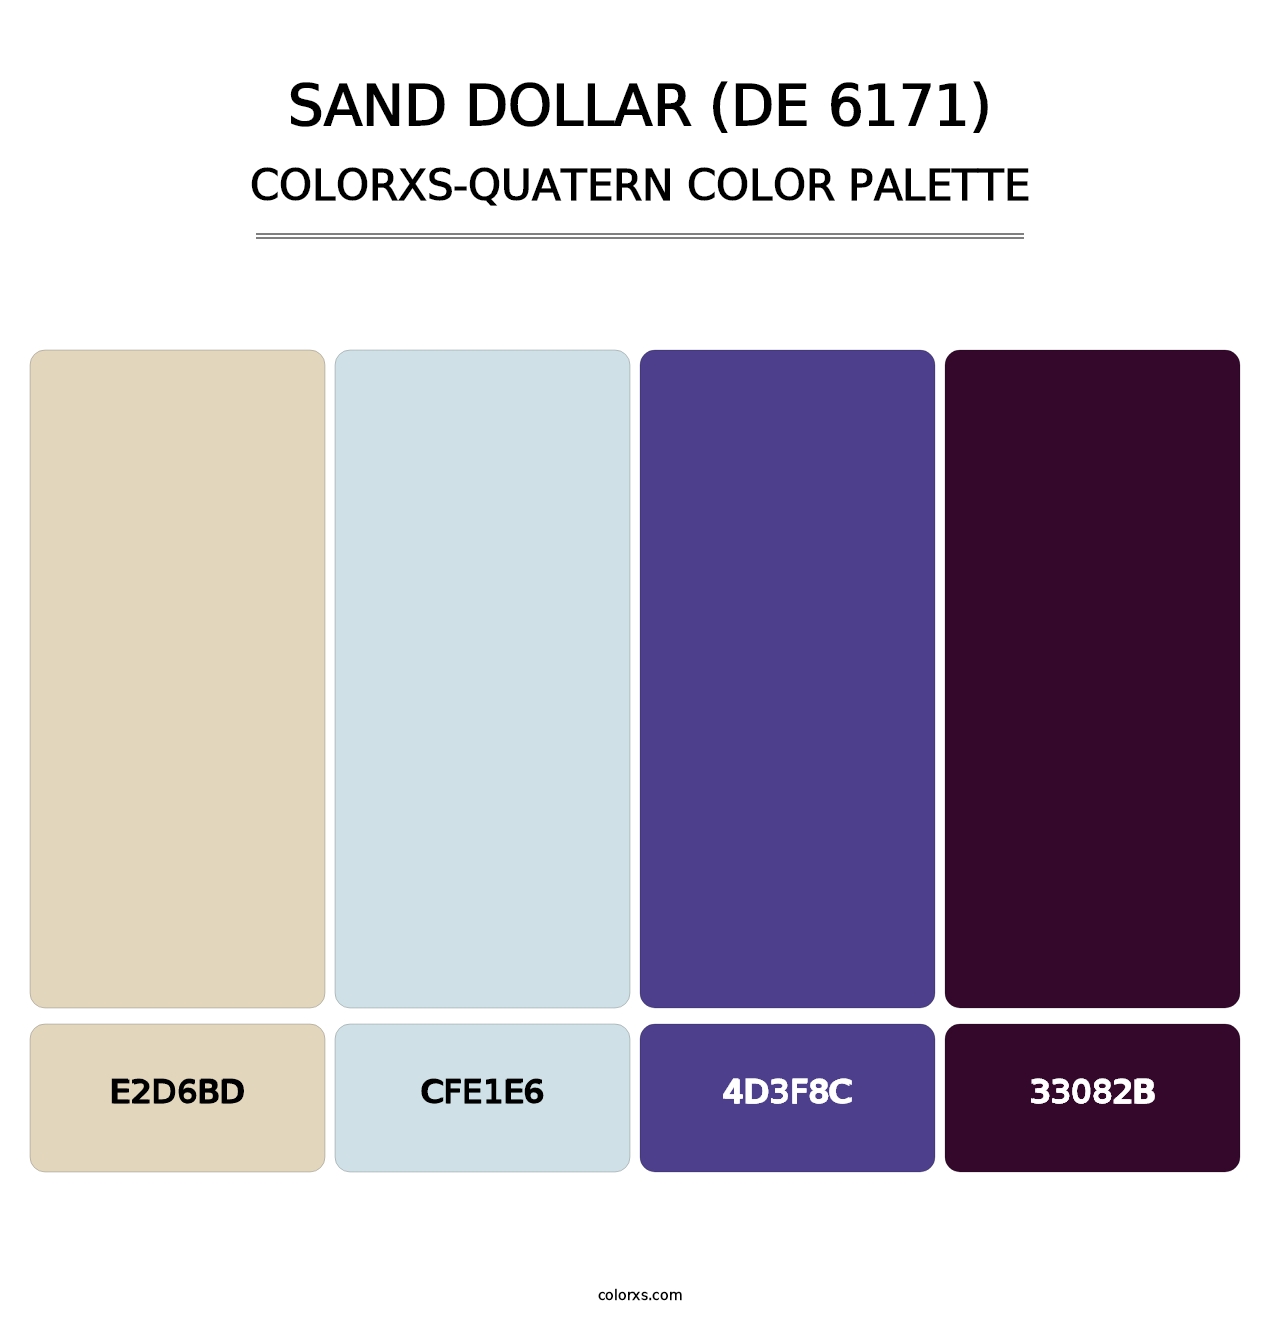 Sand Dollar (DE 6171) - Colorxs Quatern Palette